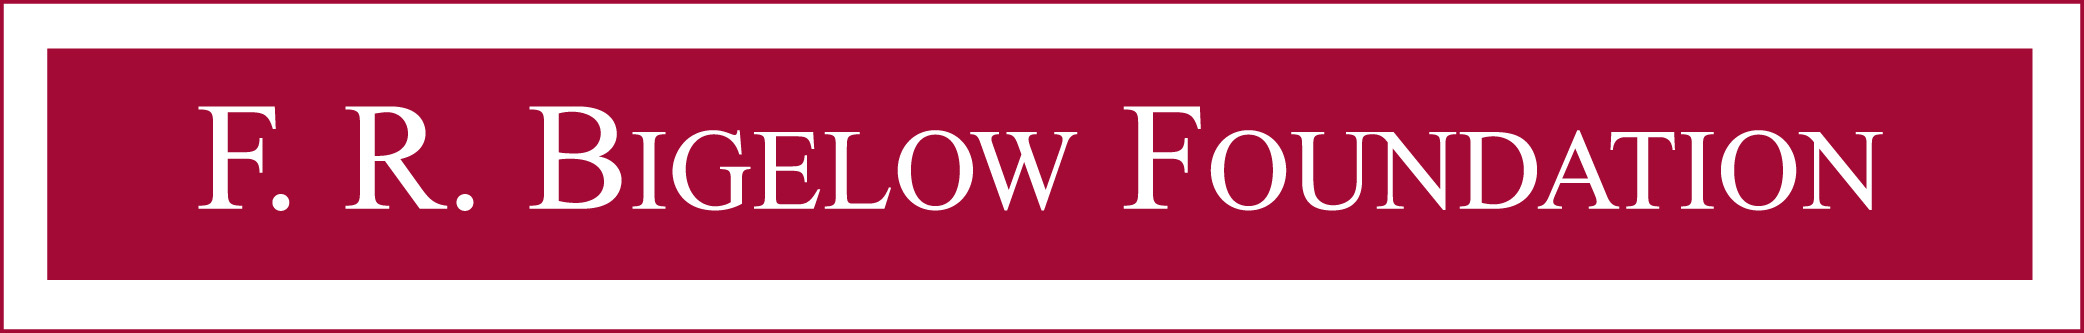 F.R. Bigelow Foundation